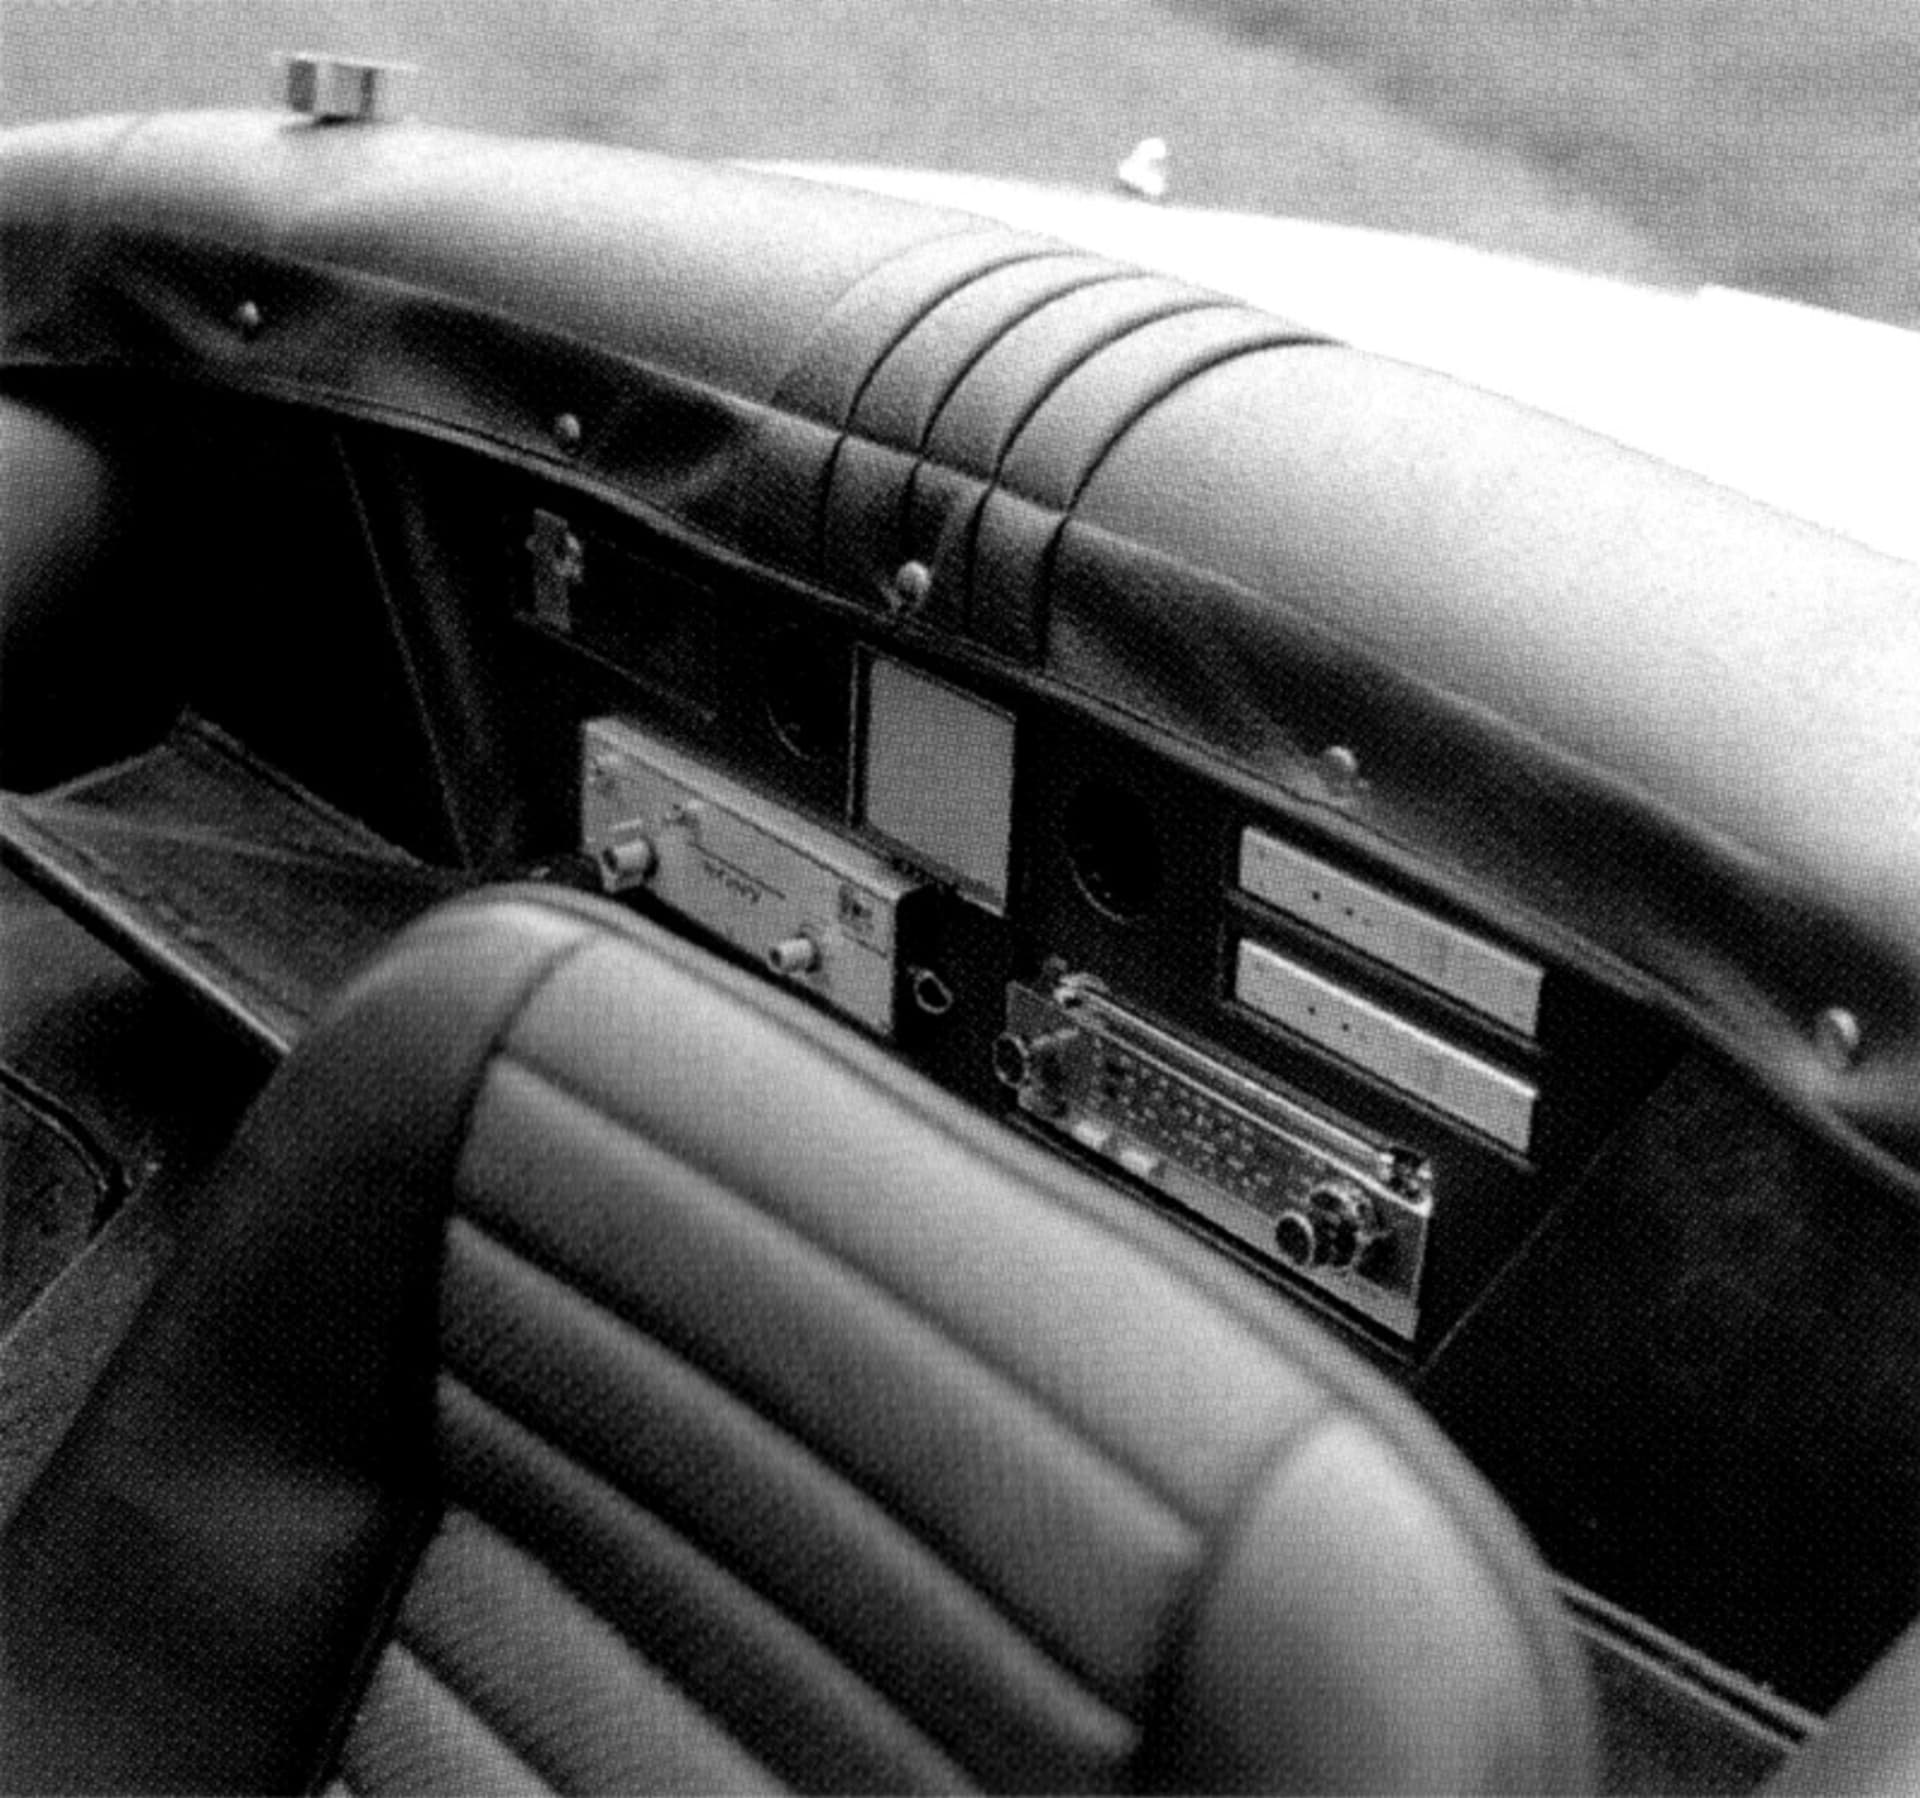 Kultovní Toyota 2000GT vznikla v pouhých 337 kusech. Pro vysokého Seana Conneryho alias Jamese Bonda ve filmu Žiješ jenom dvakrát vznikly dvě otevřené verze.